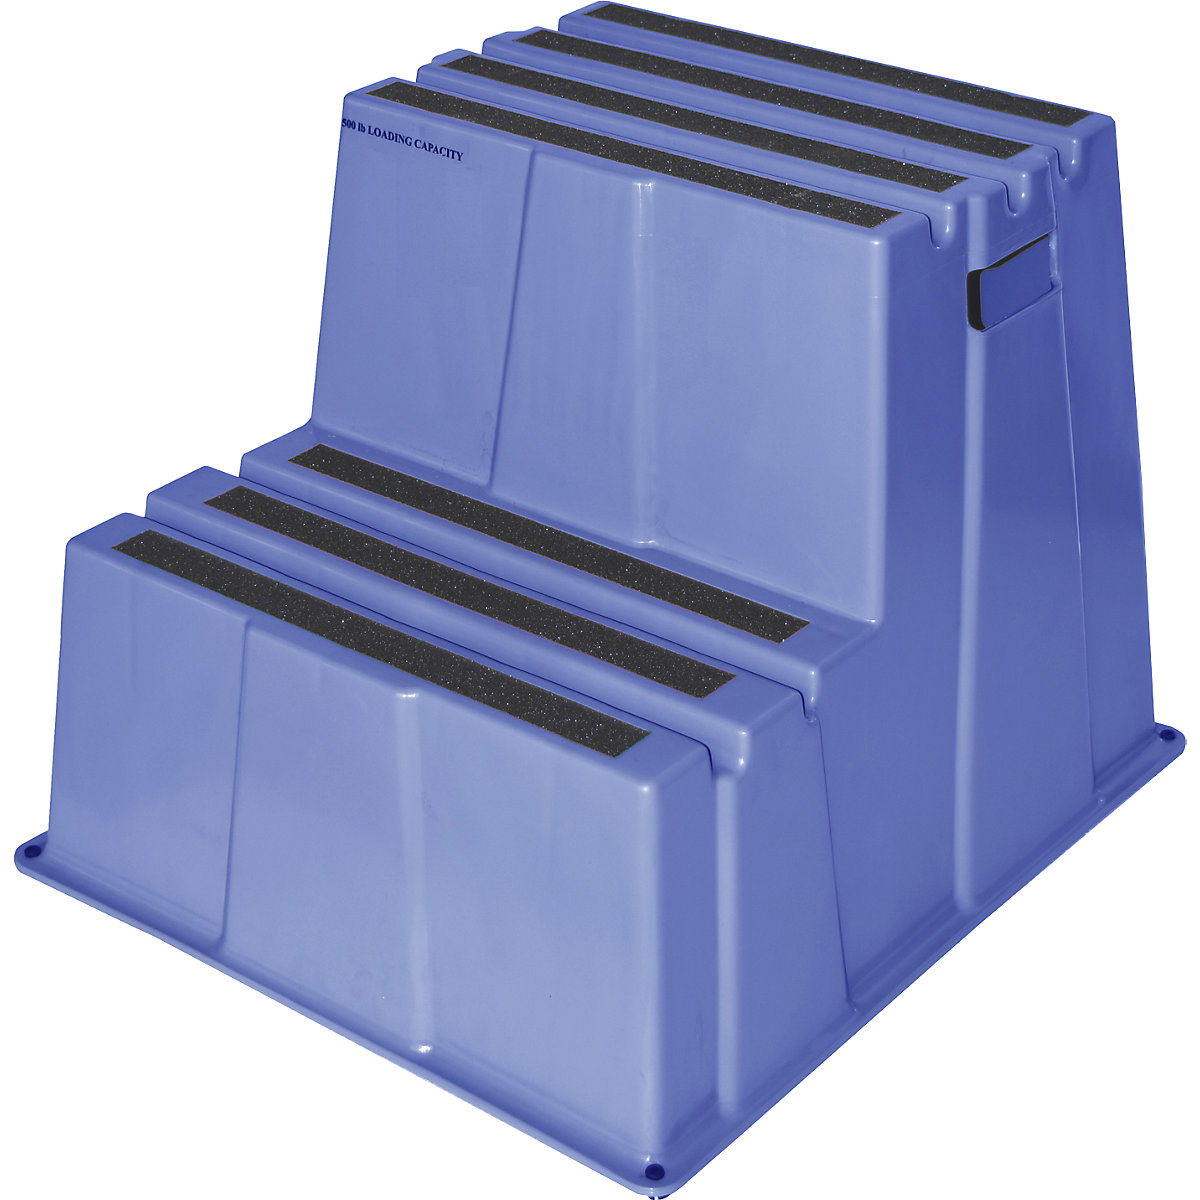 Degrau em plástico antiderrapante – Twinco, capacidade de carga 150 kg, 2 degraus, azul-9